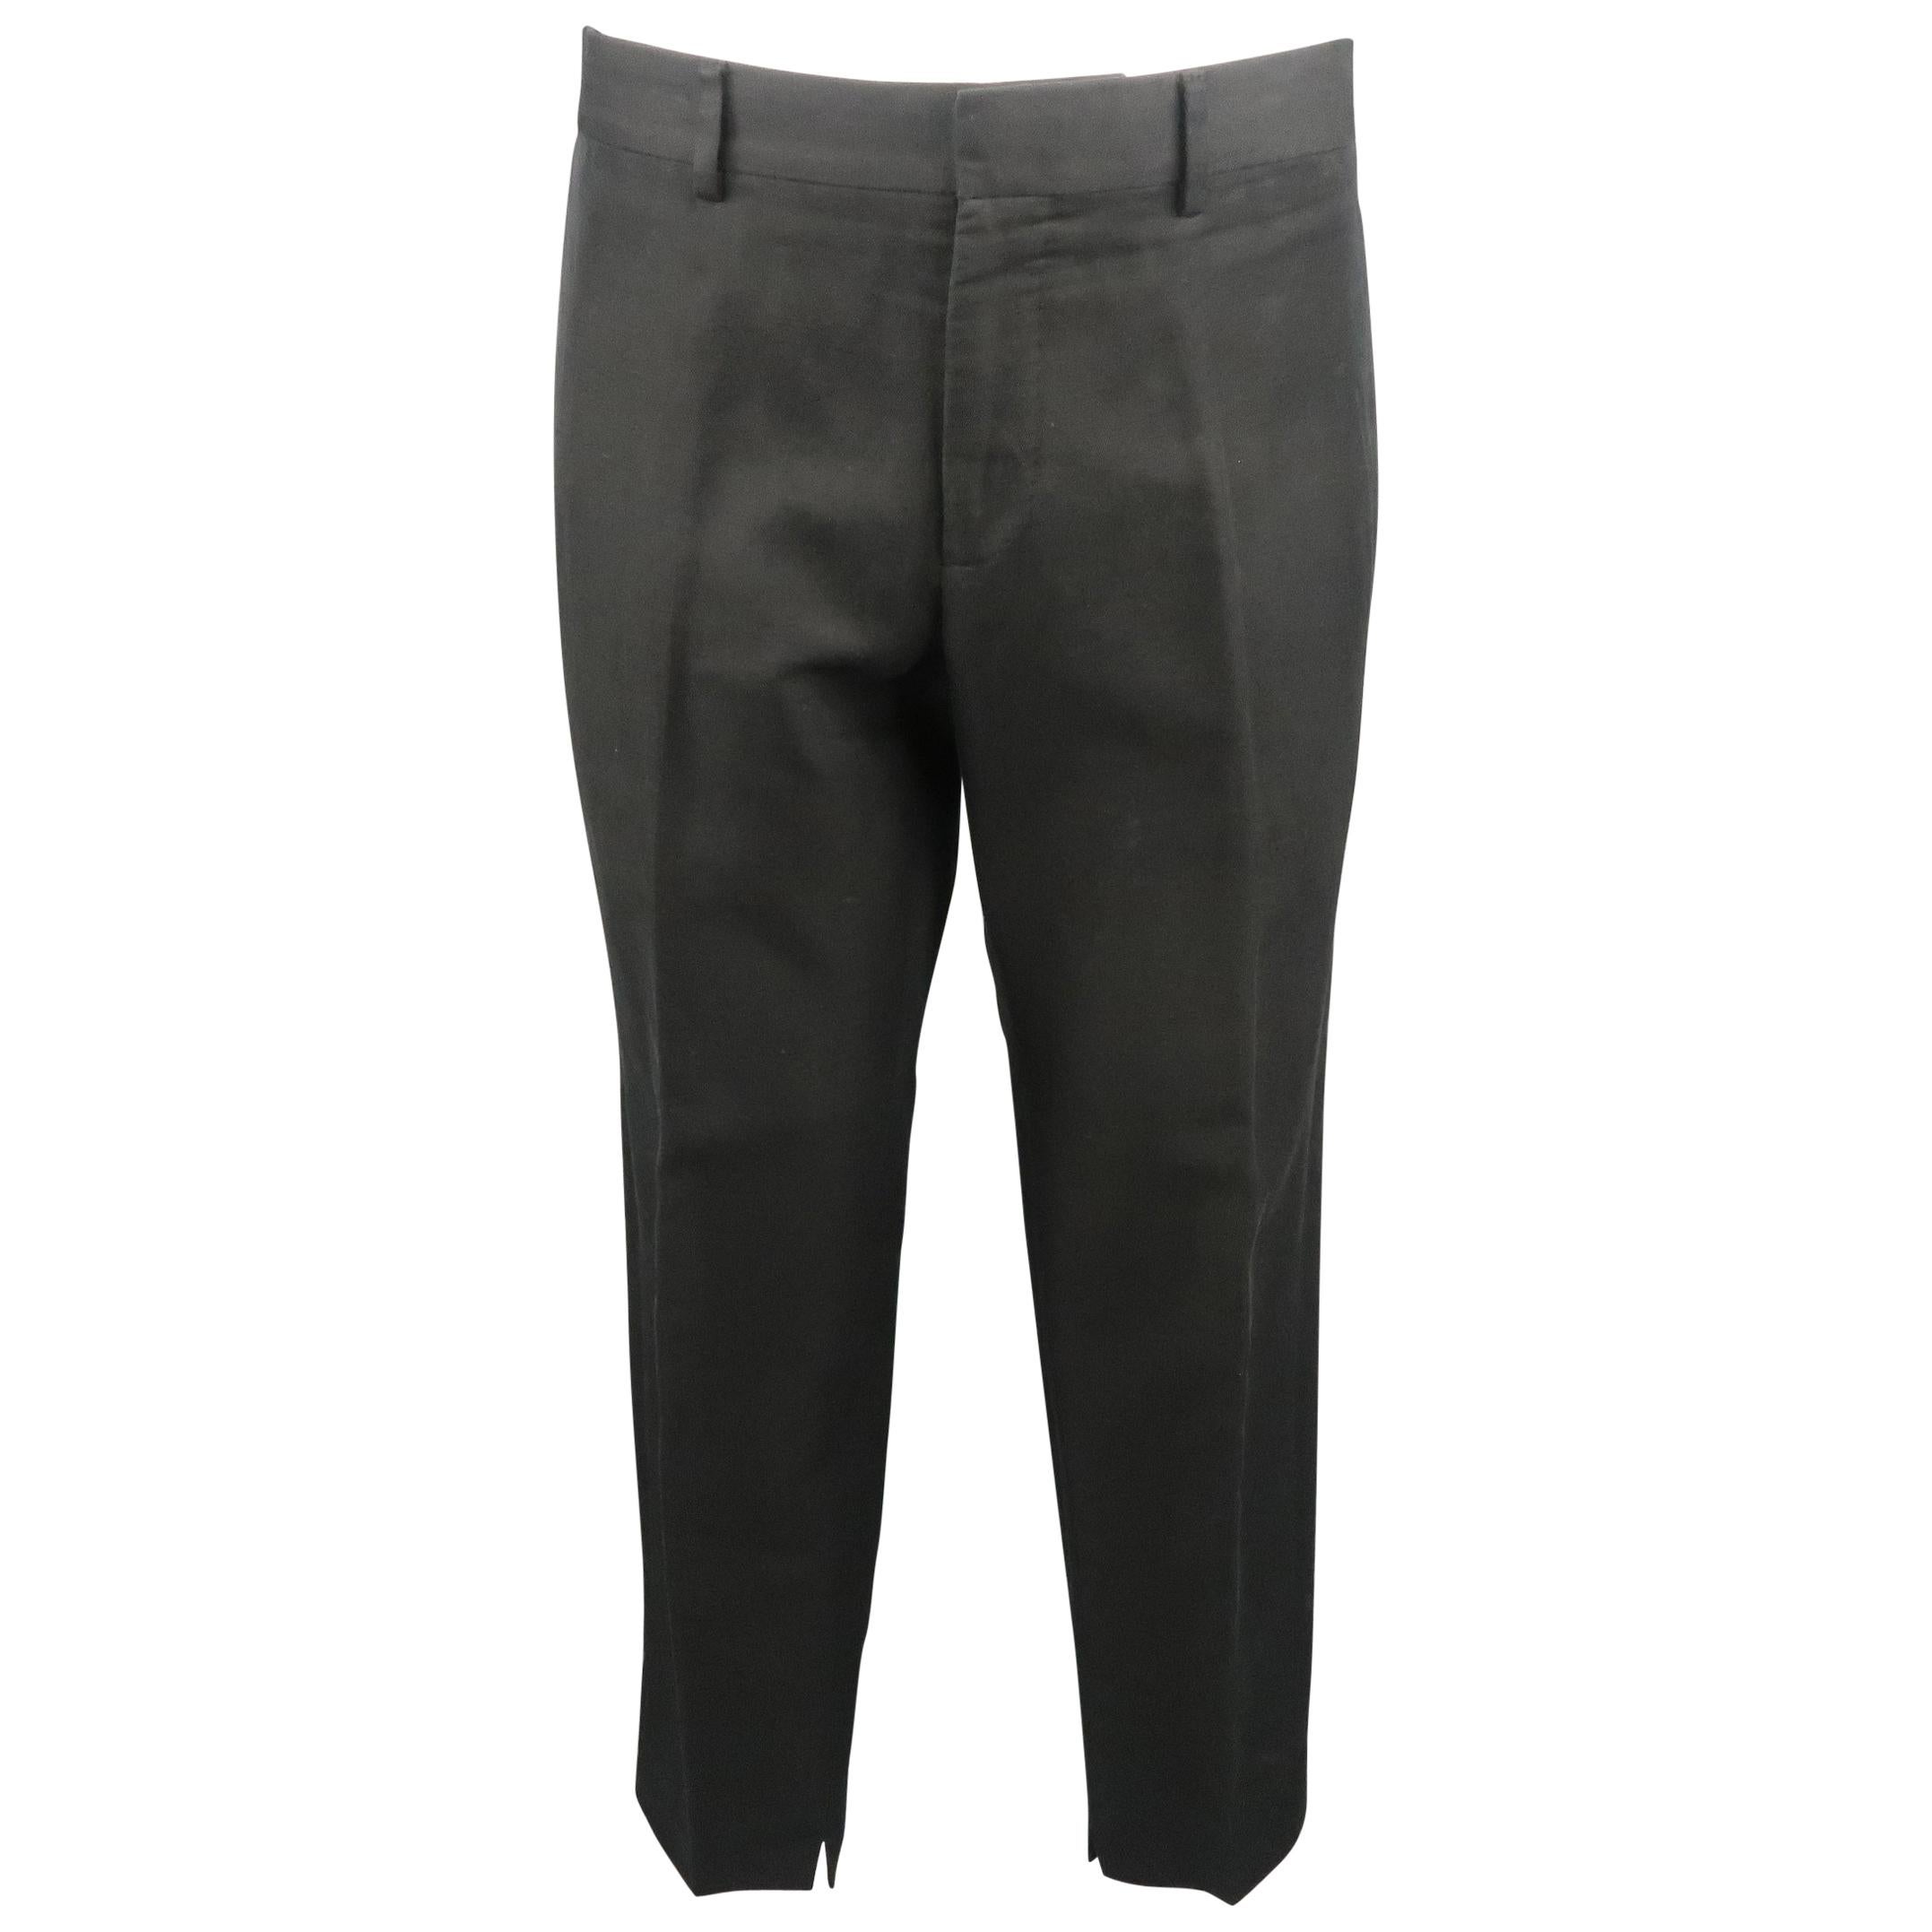 GUCCI Size 34 Black Solid Cotton / Linen Dress Pants